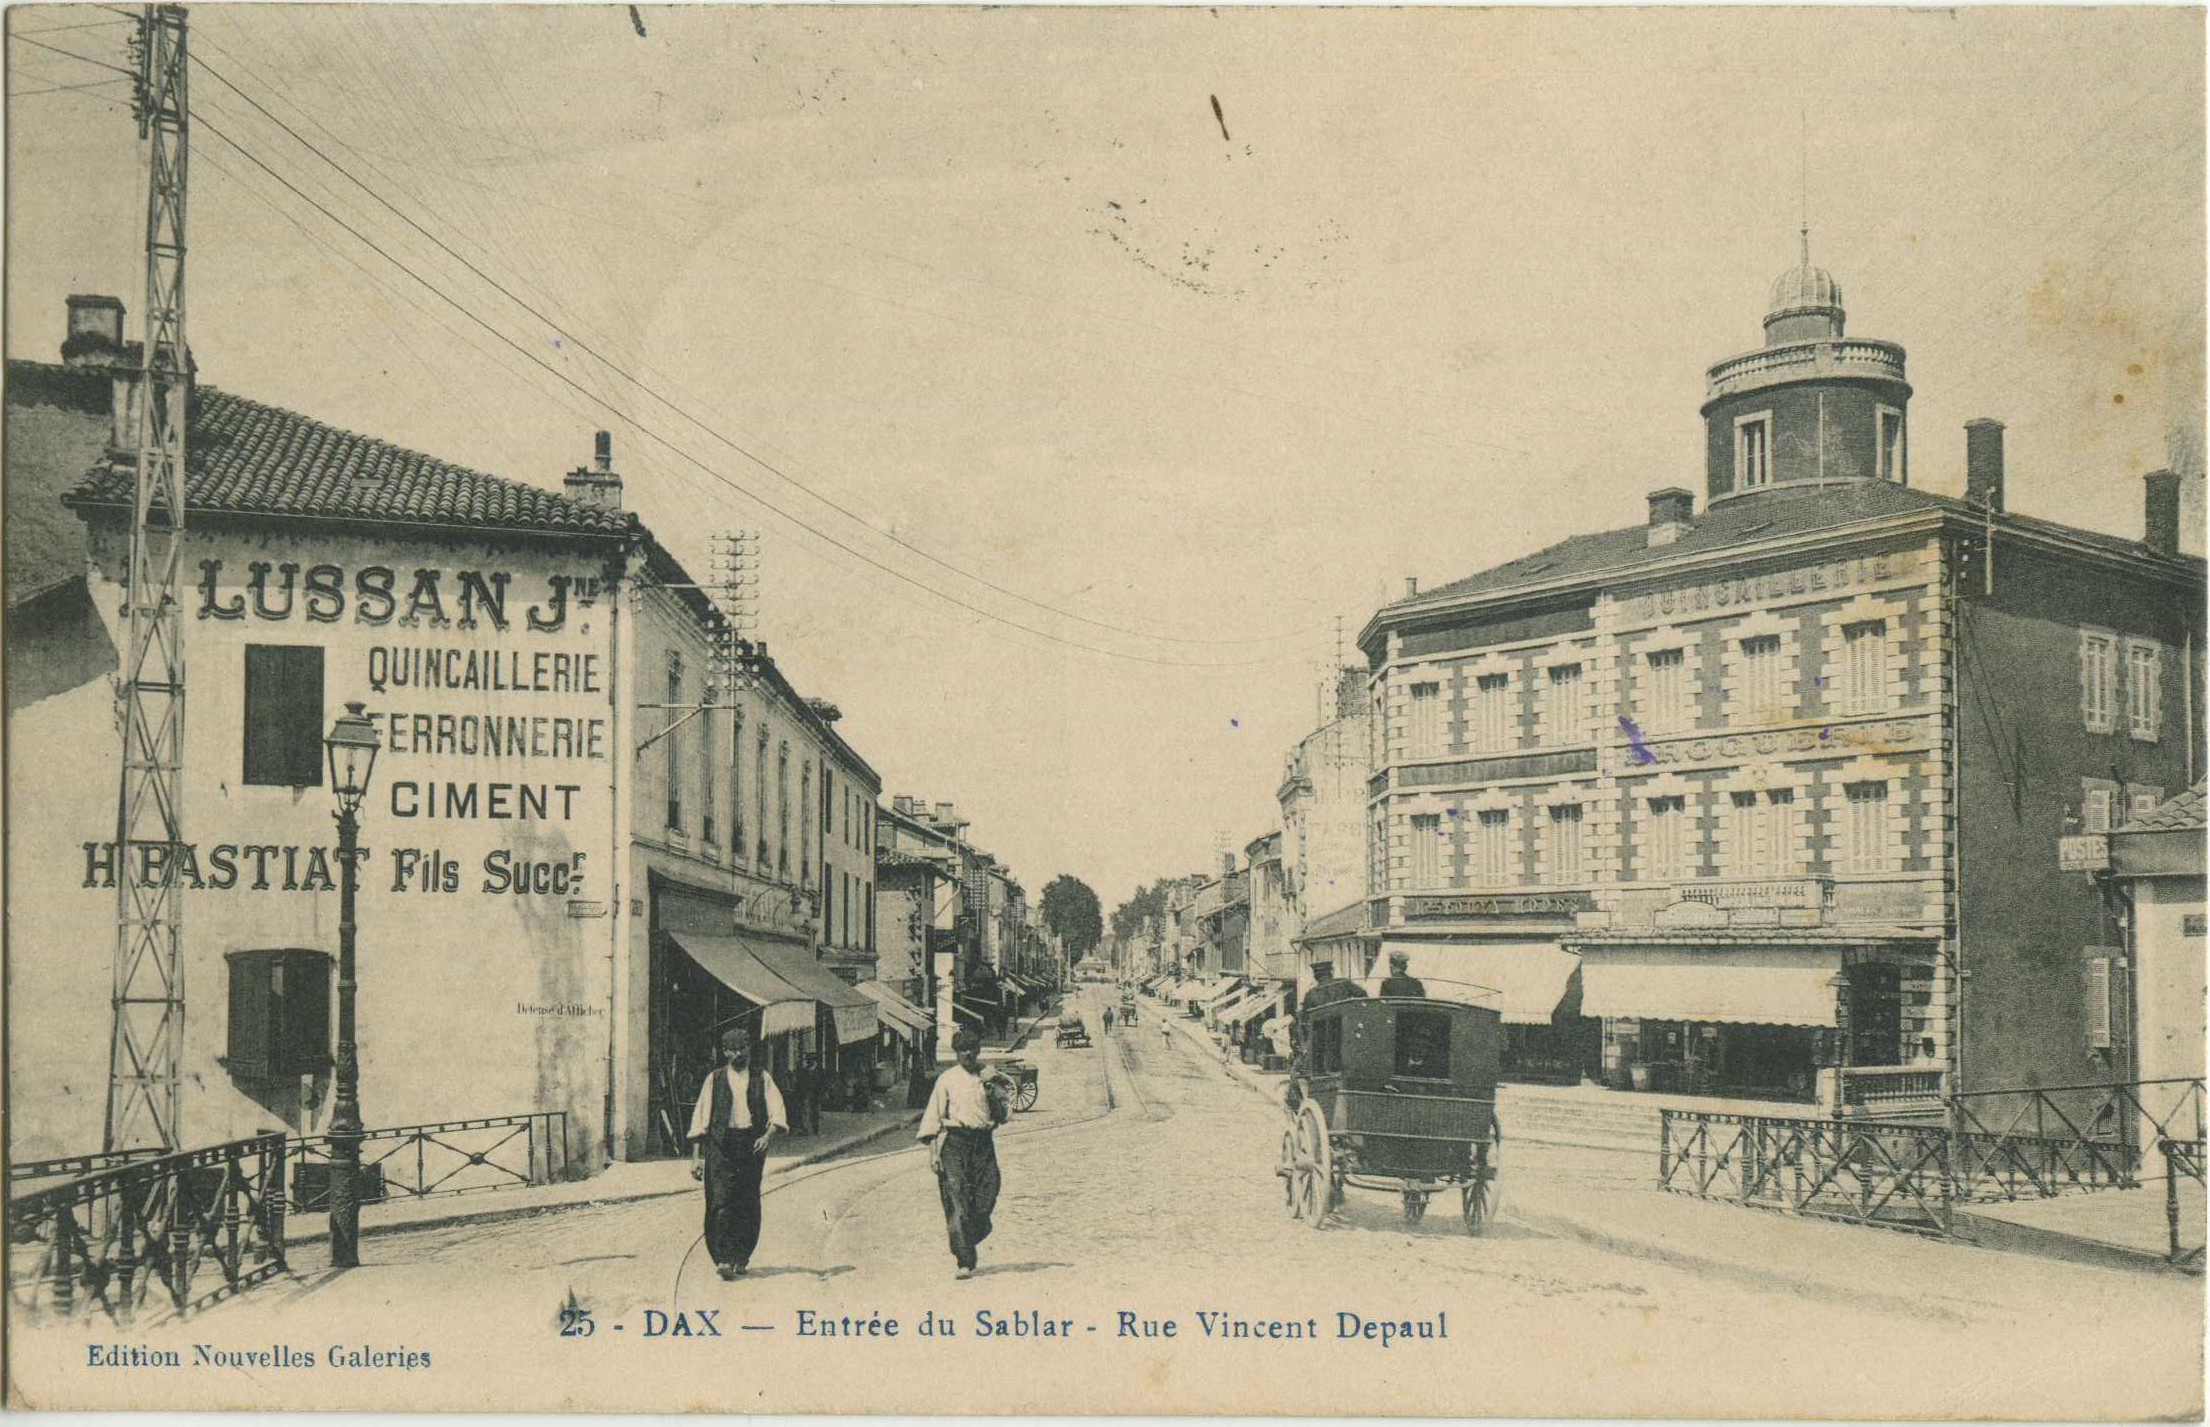 Dax - Entrée du Sablar - Rue Vincent Depaul